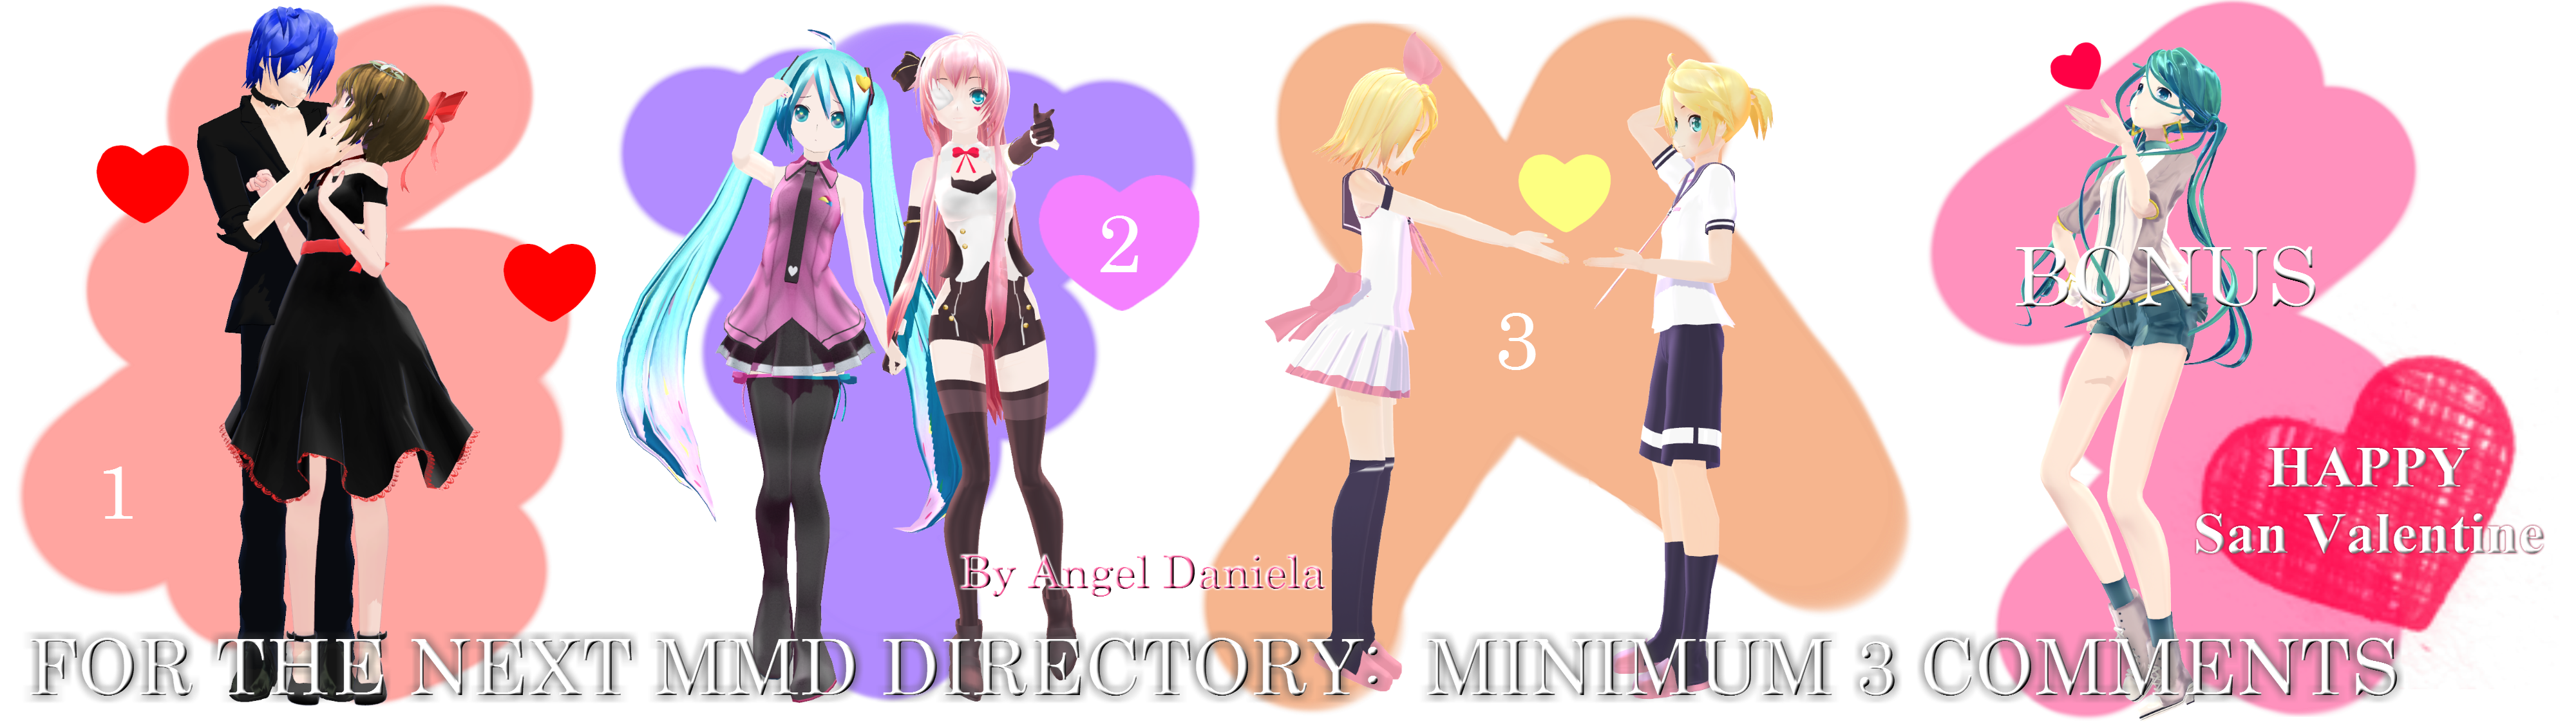 MMD DL Directory 7 [+ Pose Pack DL] by Angela-16 on DeviantArt